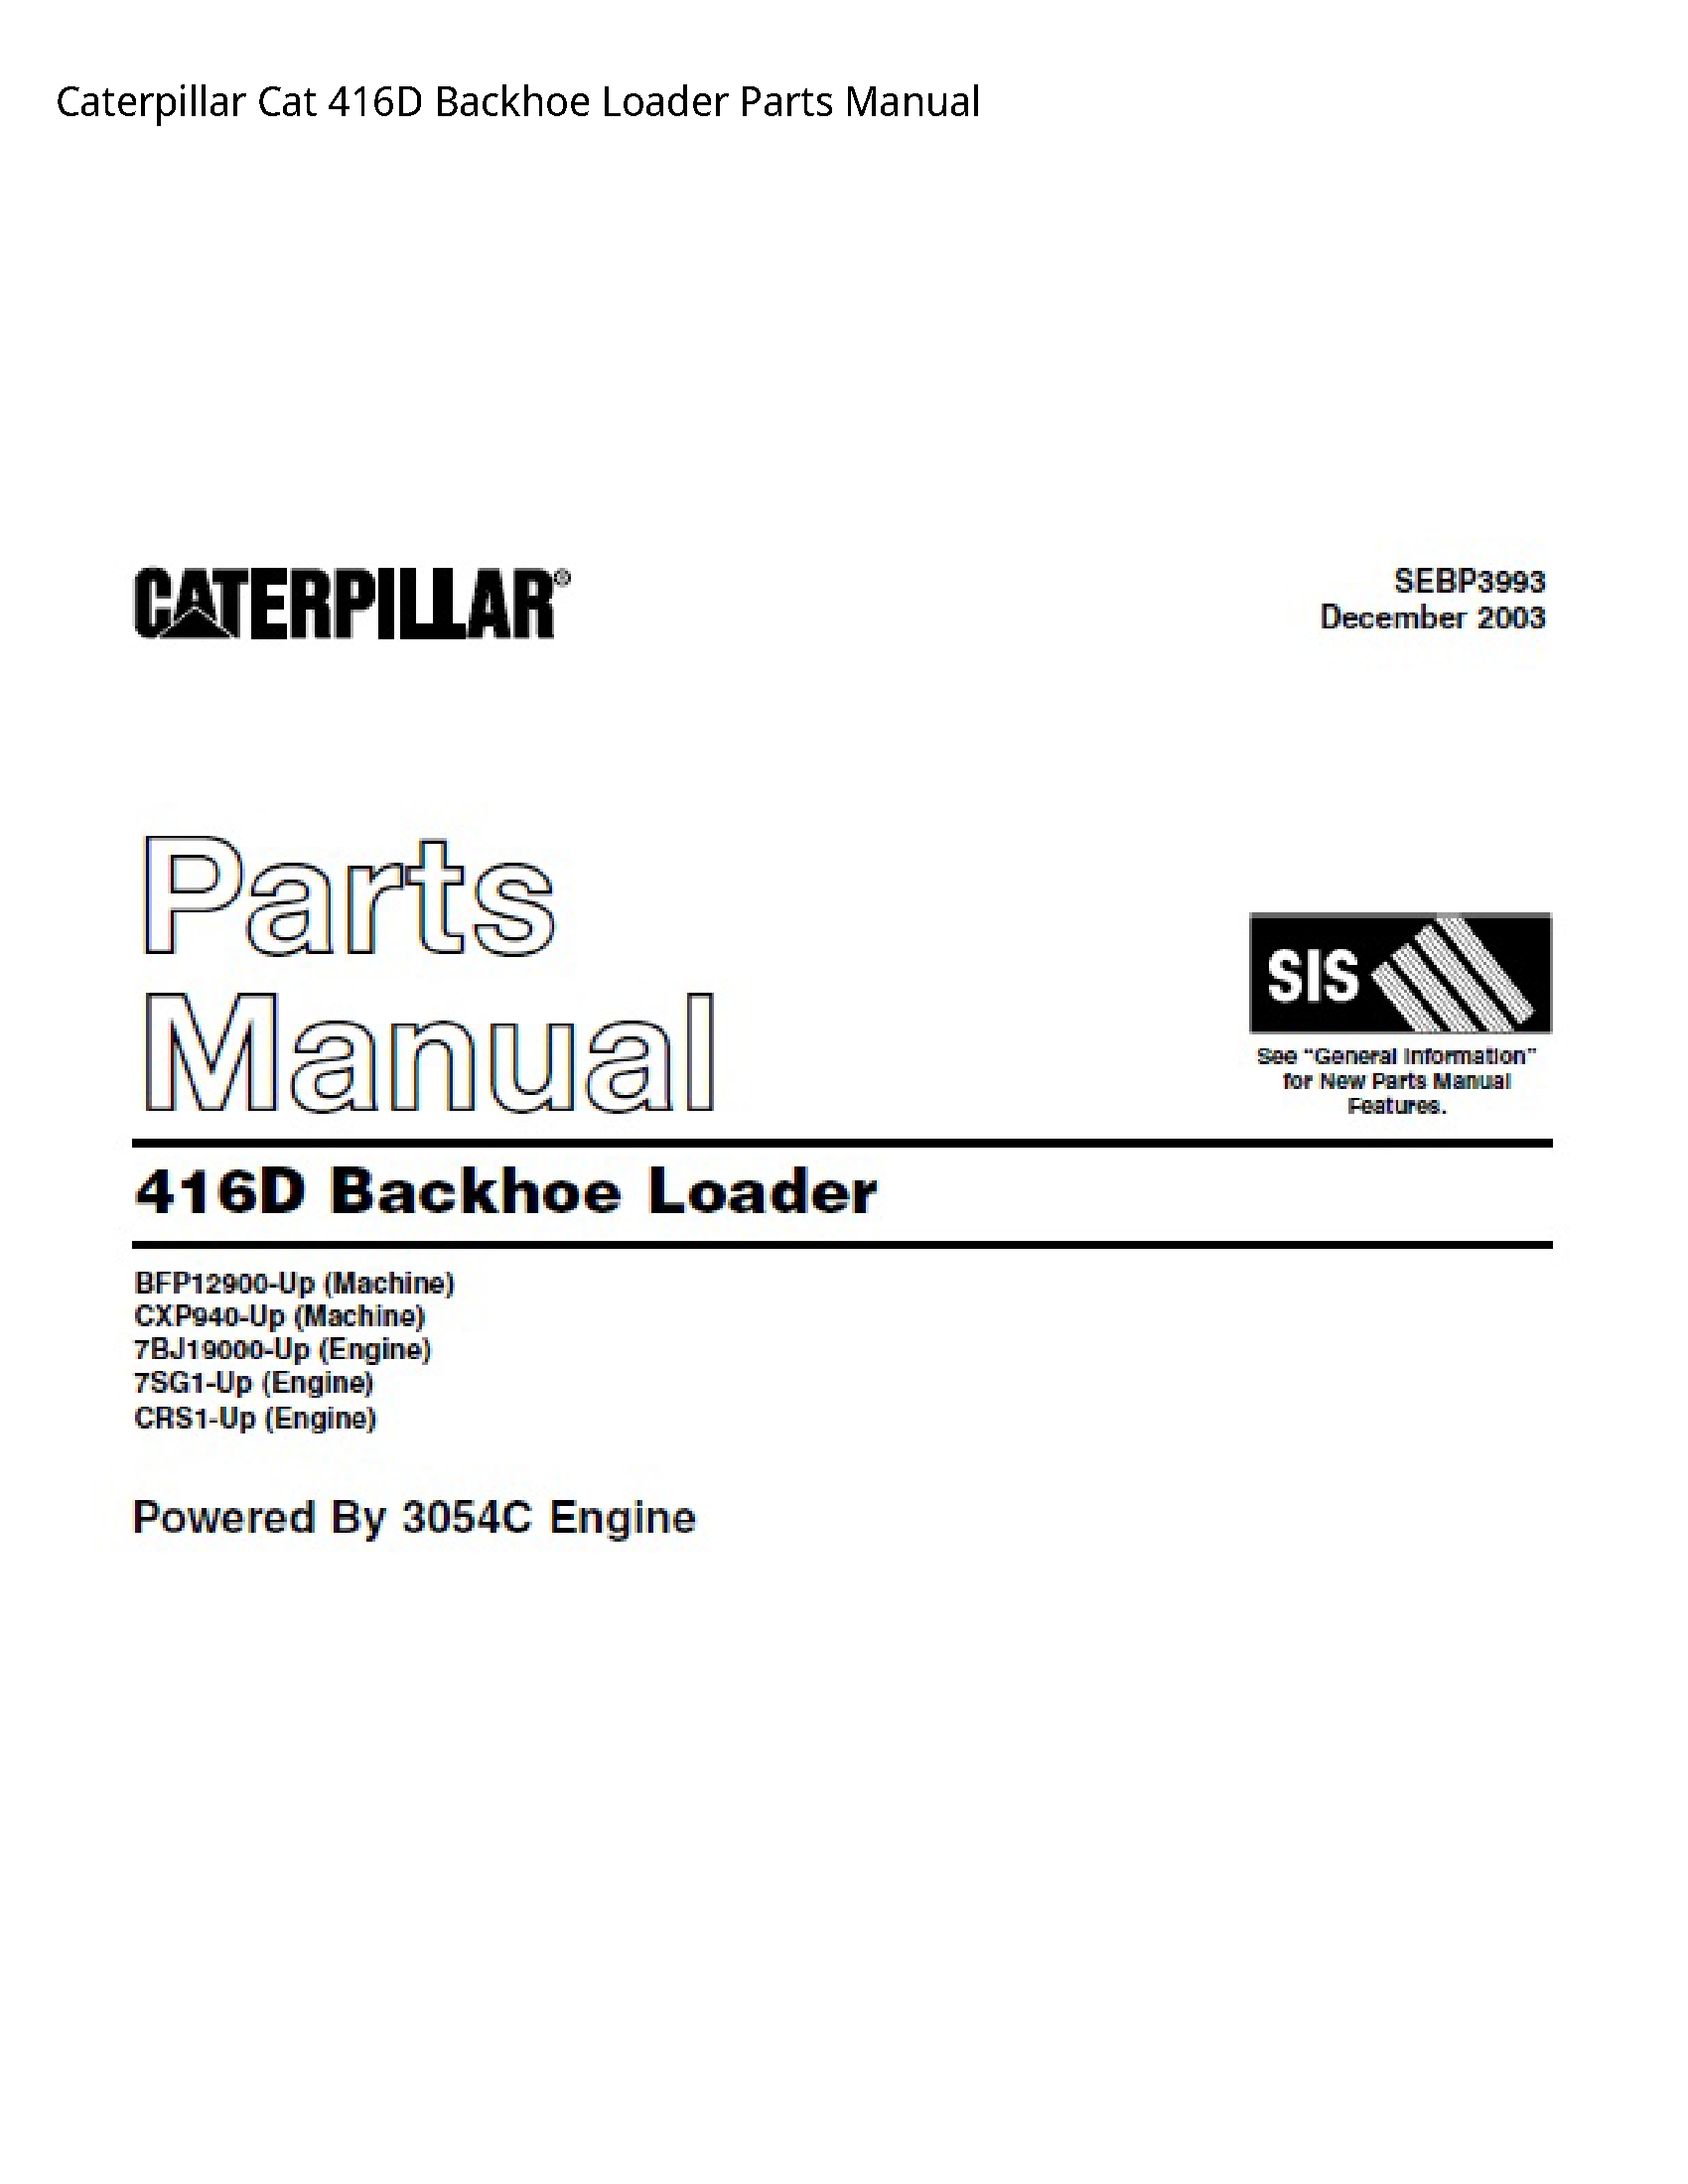 Caterpillar 416D Cat Backhoe Loader Parts manual